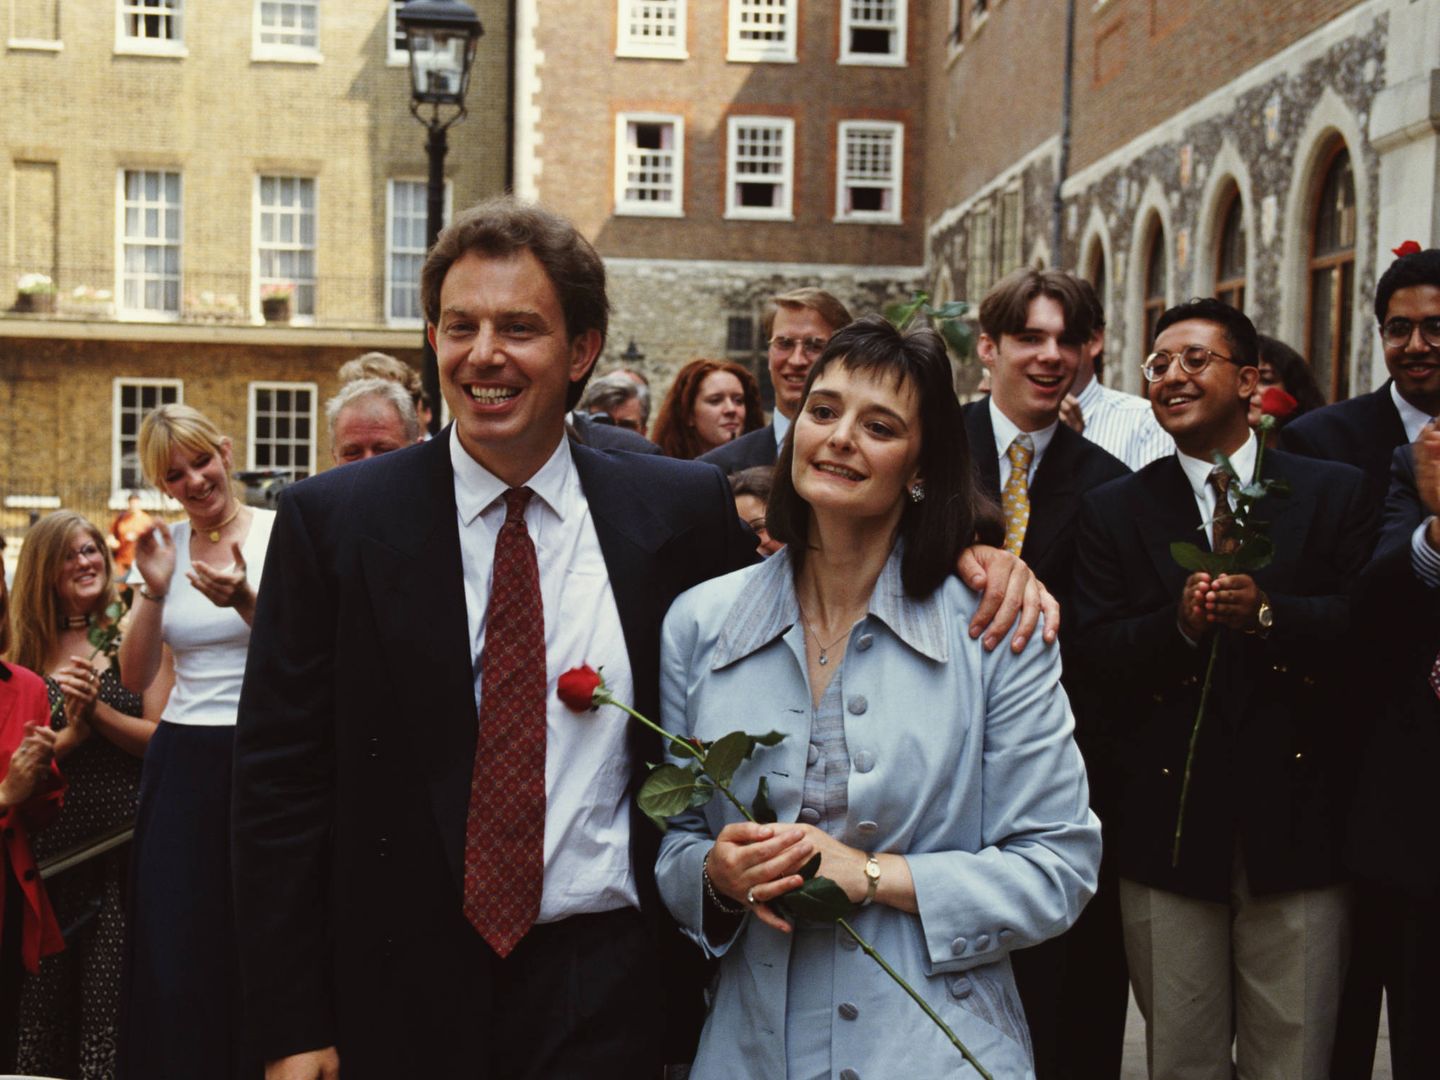  El que fuera líder laborista y su esposa, en una imagen de 1994. (Getty)